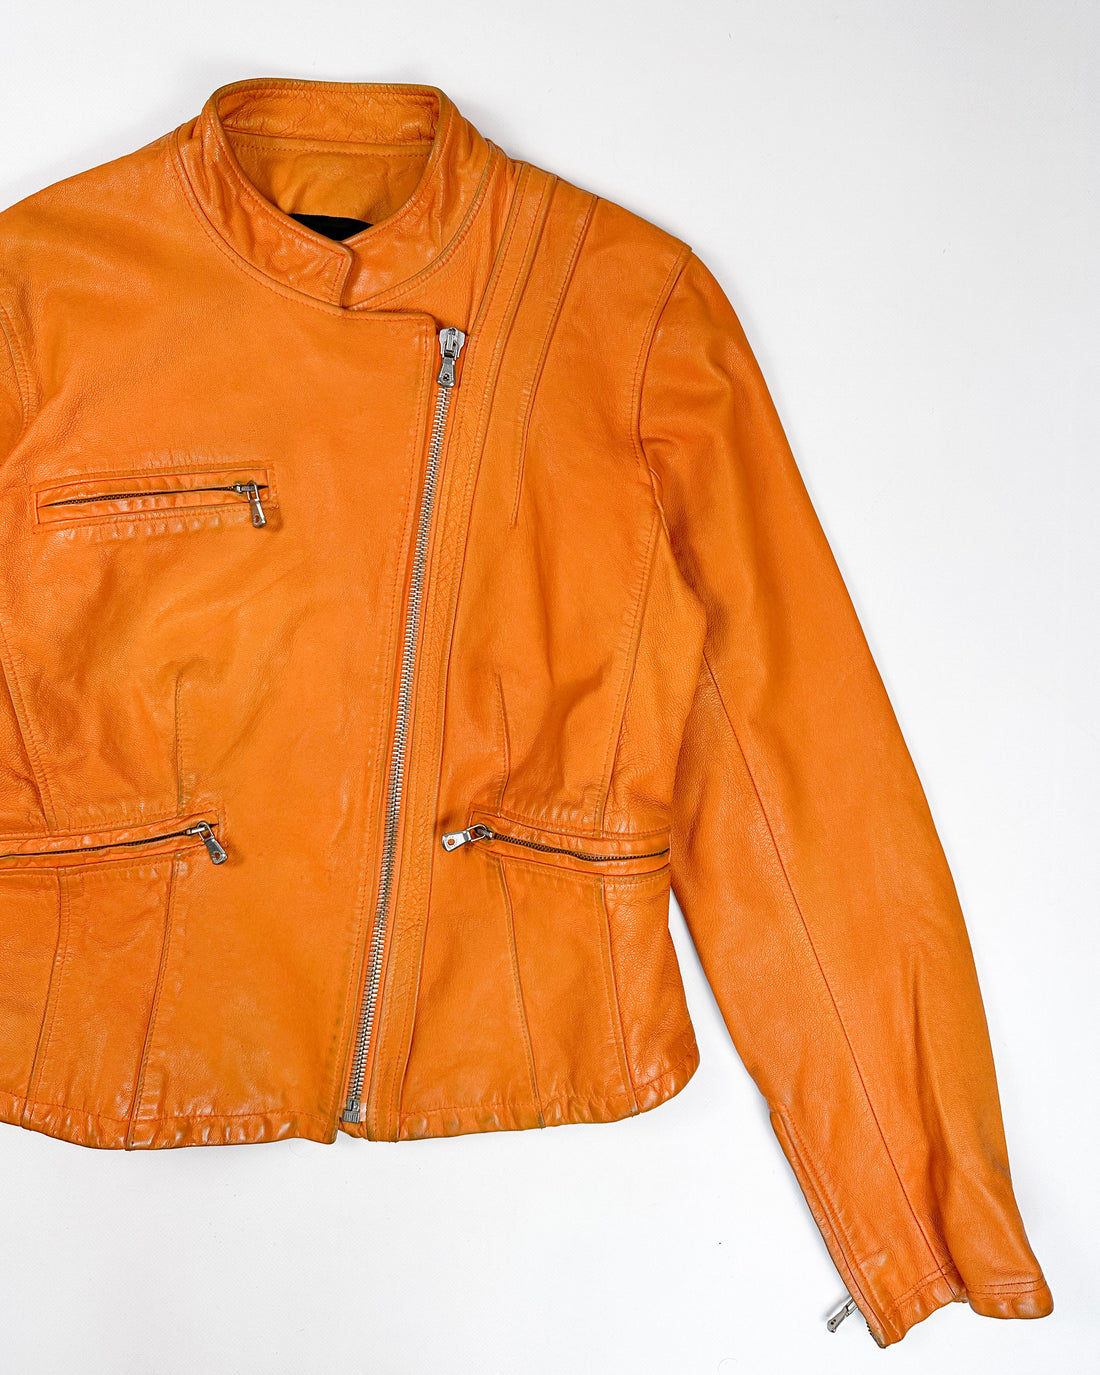 Dolce & Gabbana Orange Leather Jacket 2000's